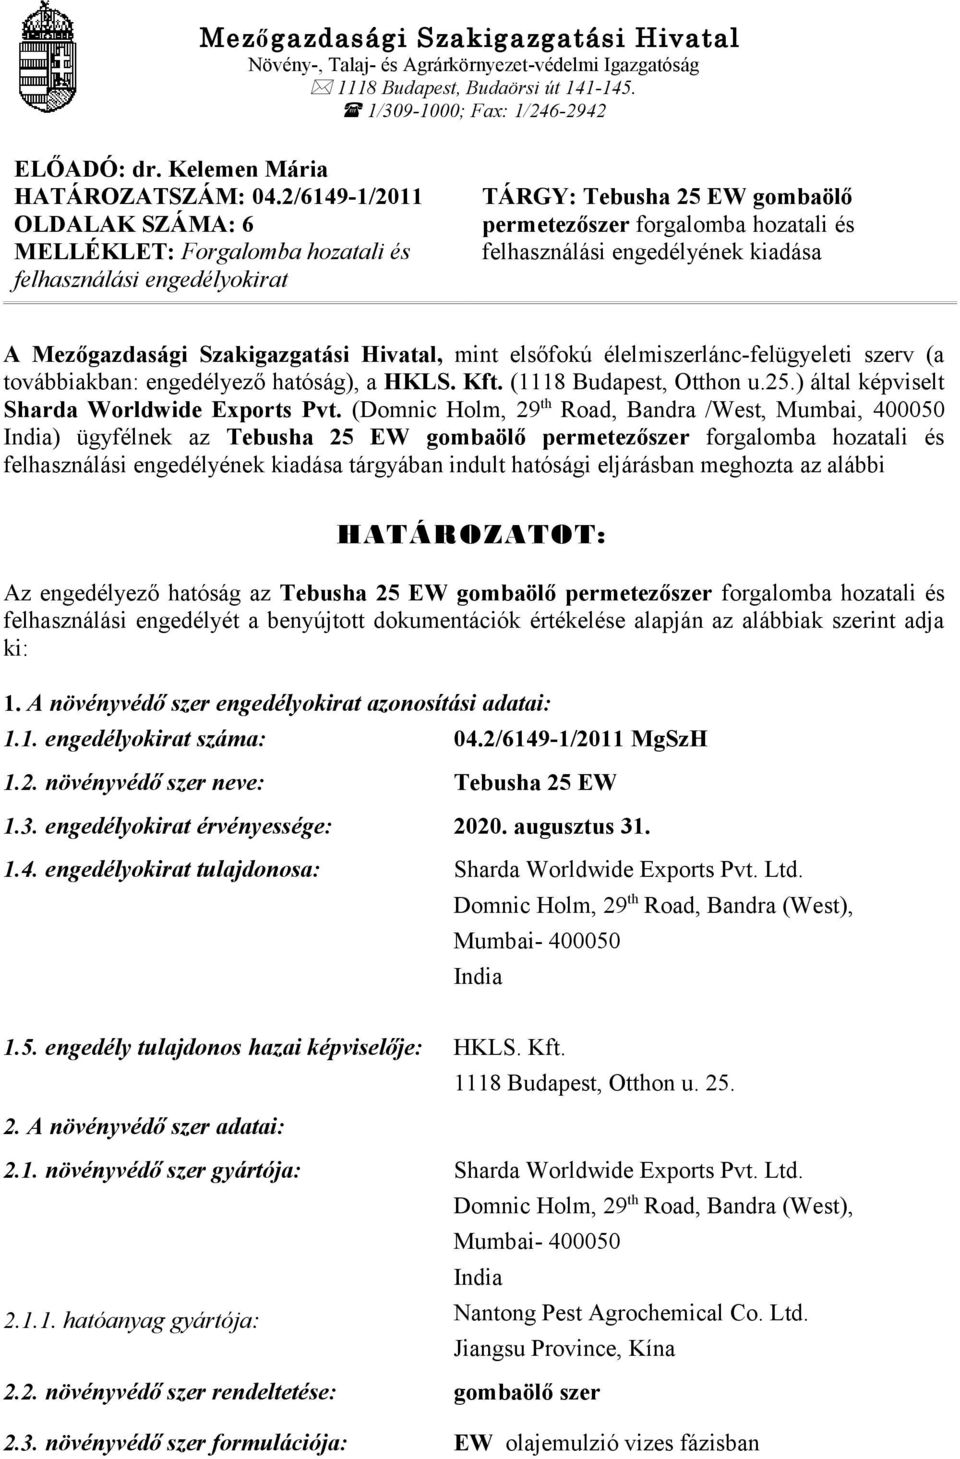 Mezőgazdasági Szakigazgatási Hivatal, mint elsőfokú élelmiszerlánc-felügyeleti szerv (a továbbiakban: engedélyező hatóság), a HKLS. Kft. (1118 Budapest, Otthon u.25.